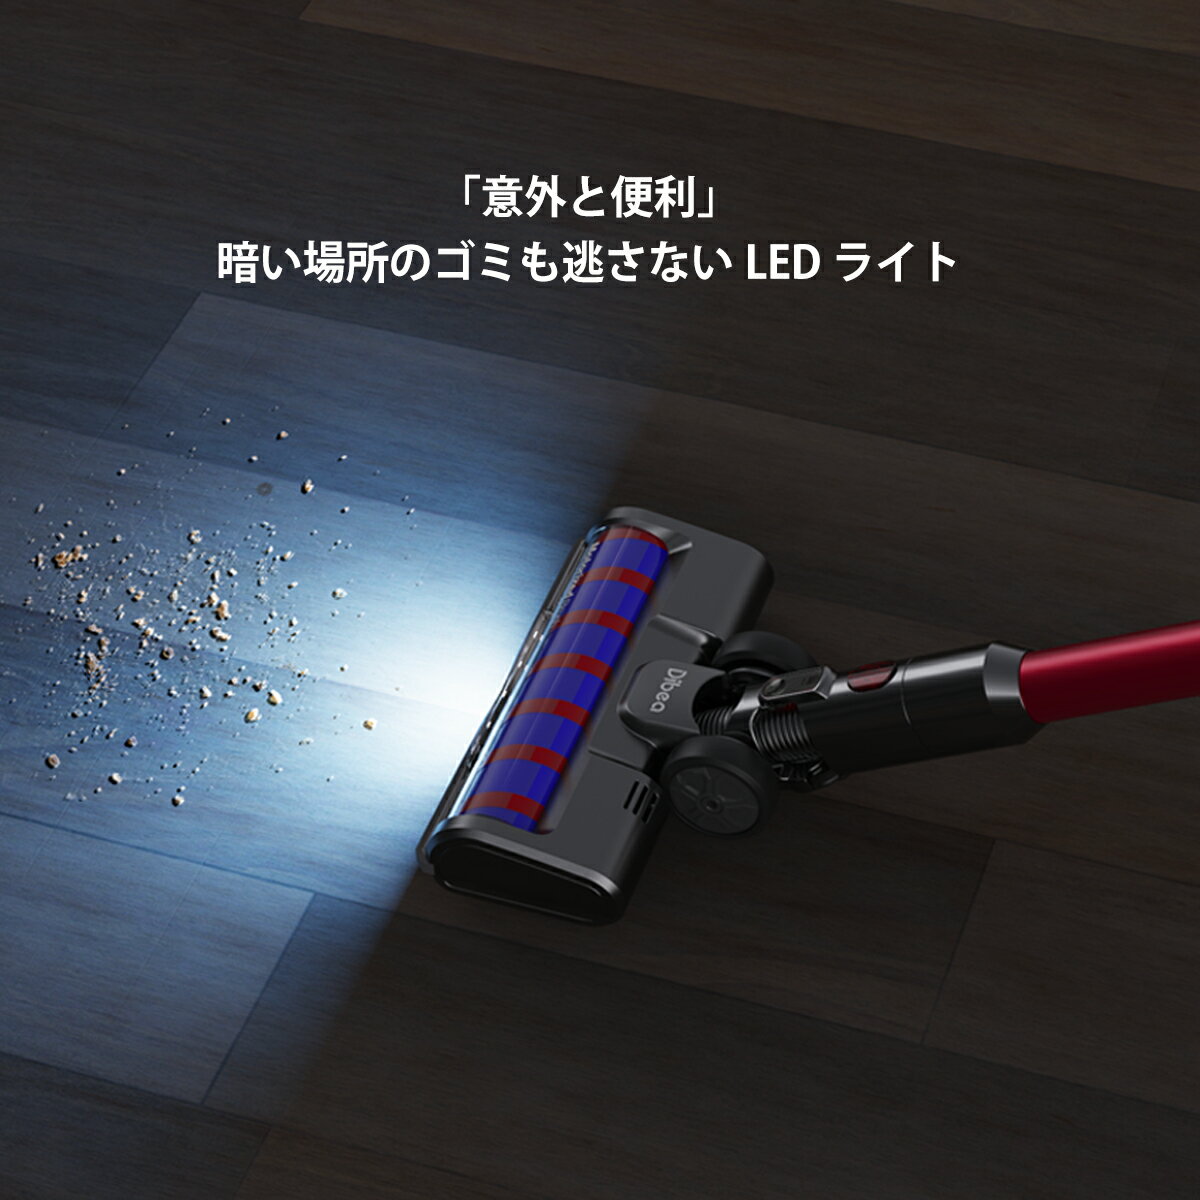 【楽天市場】リソウジャパン リソウジャパン ハンディ掃除機 コードレス サイクロン式 RS-006 25000PA LEDランプ付き | 価格